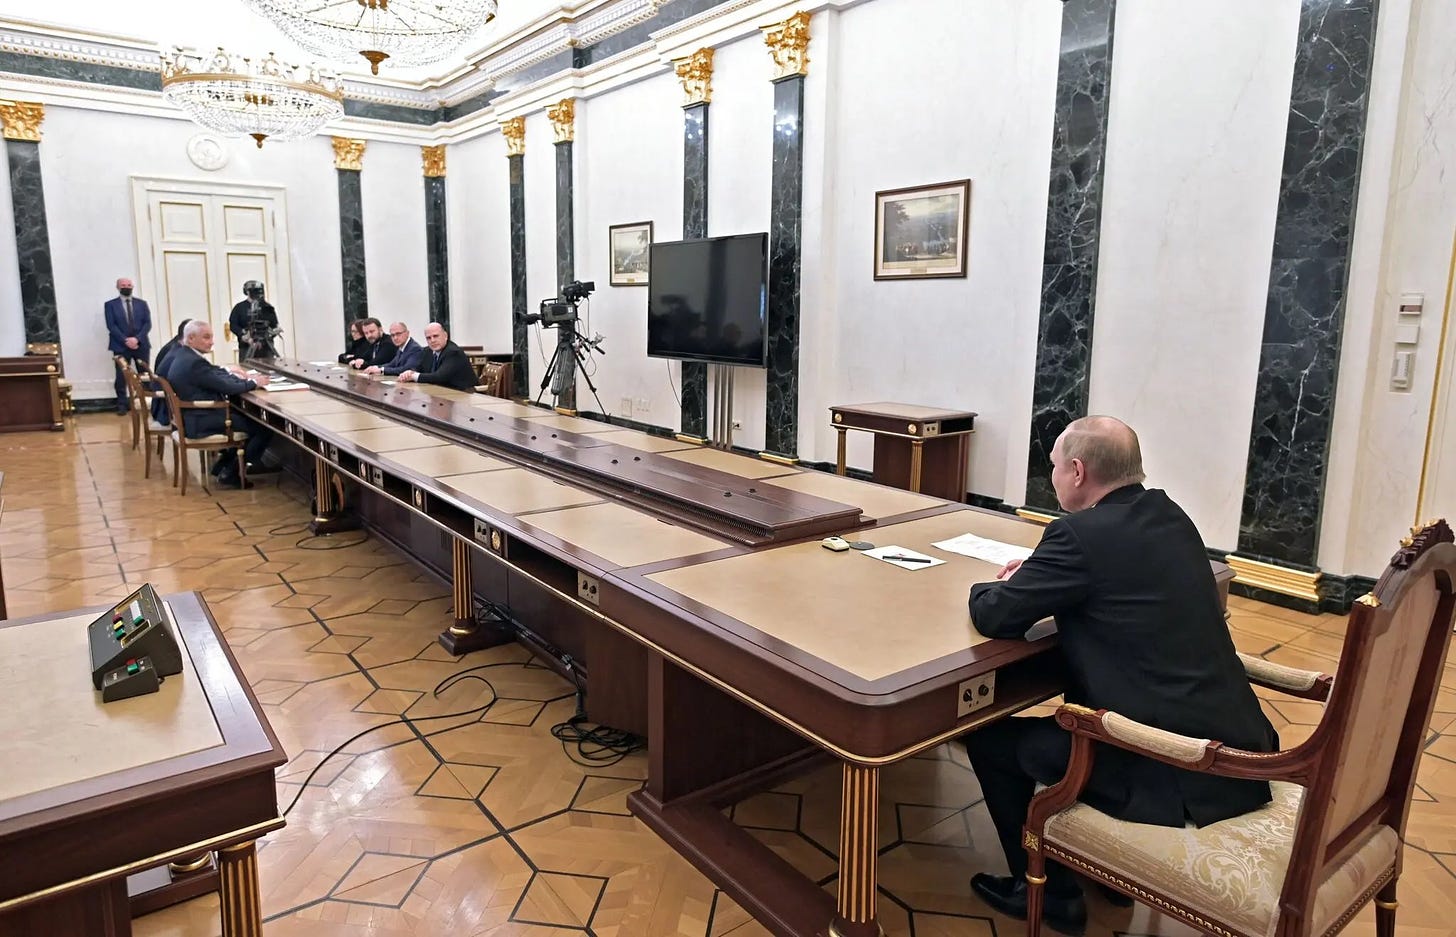 Putin's inordinately long meeting tables mocked | Boing Boing